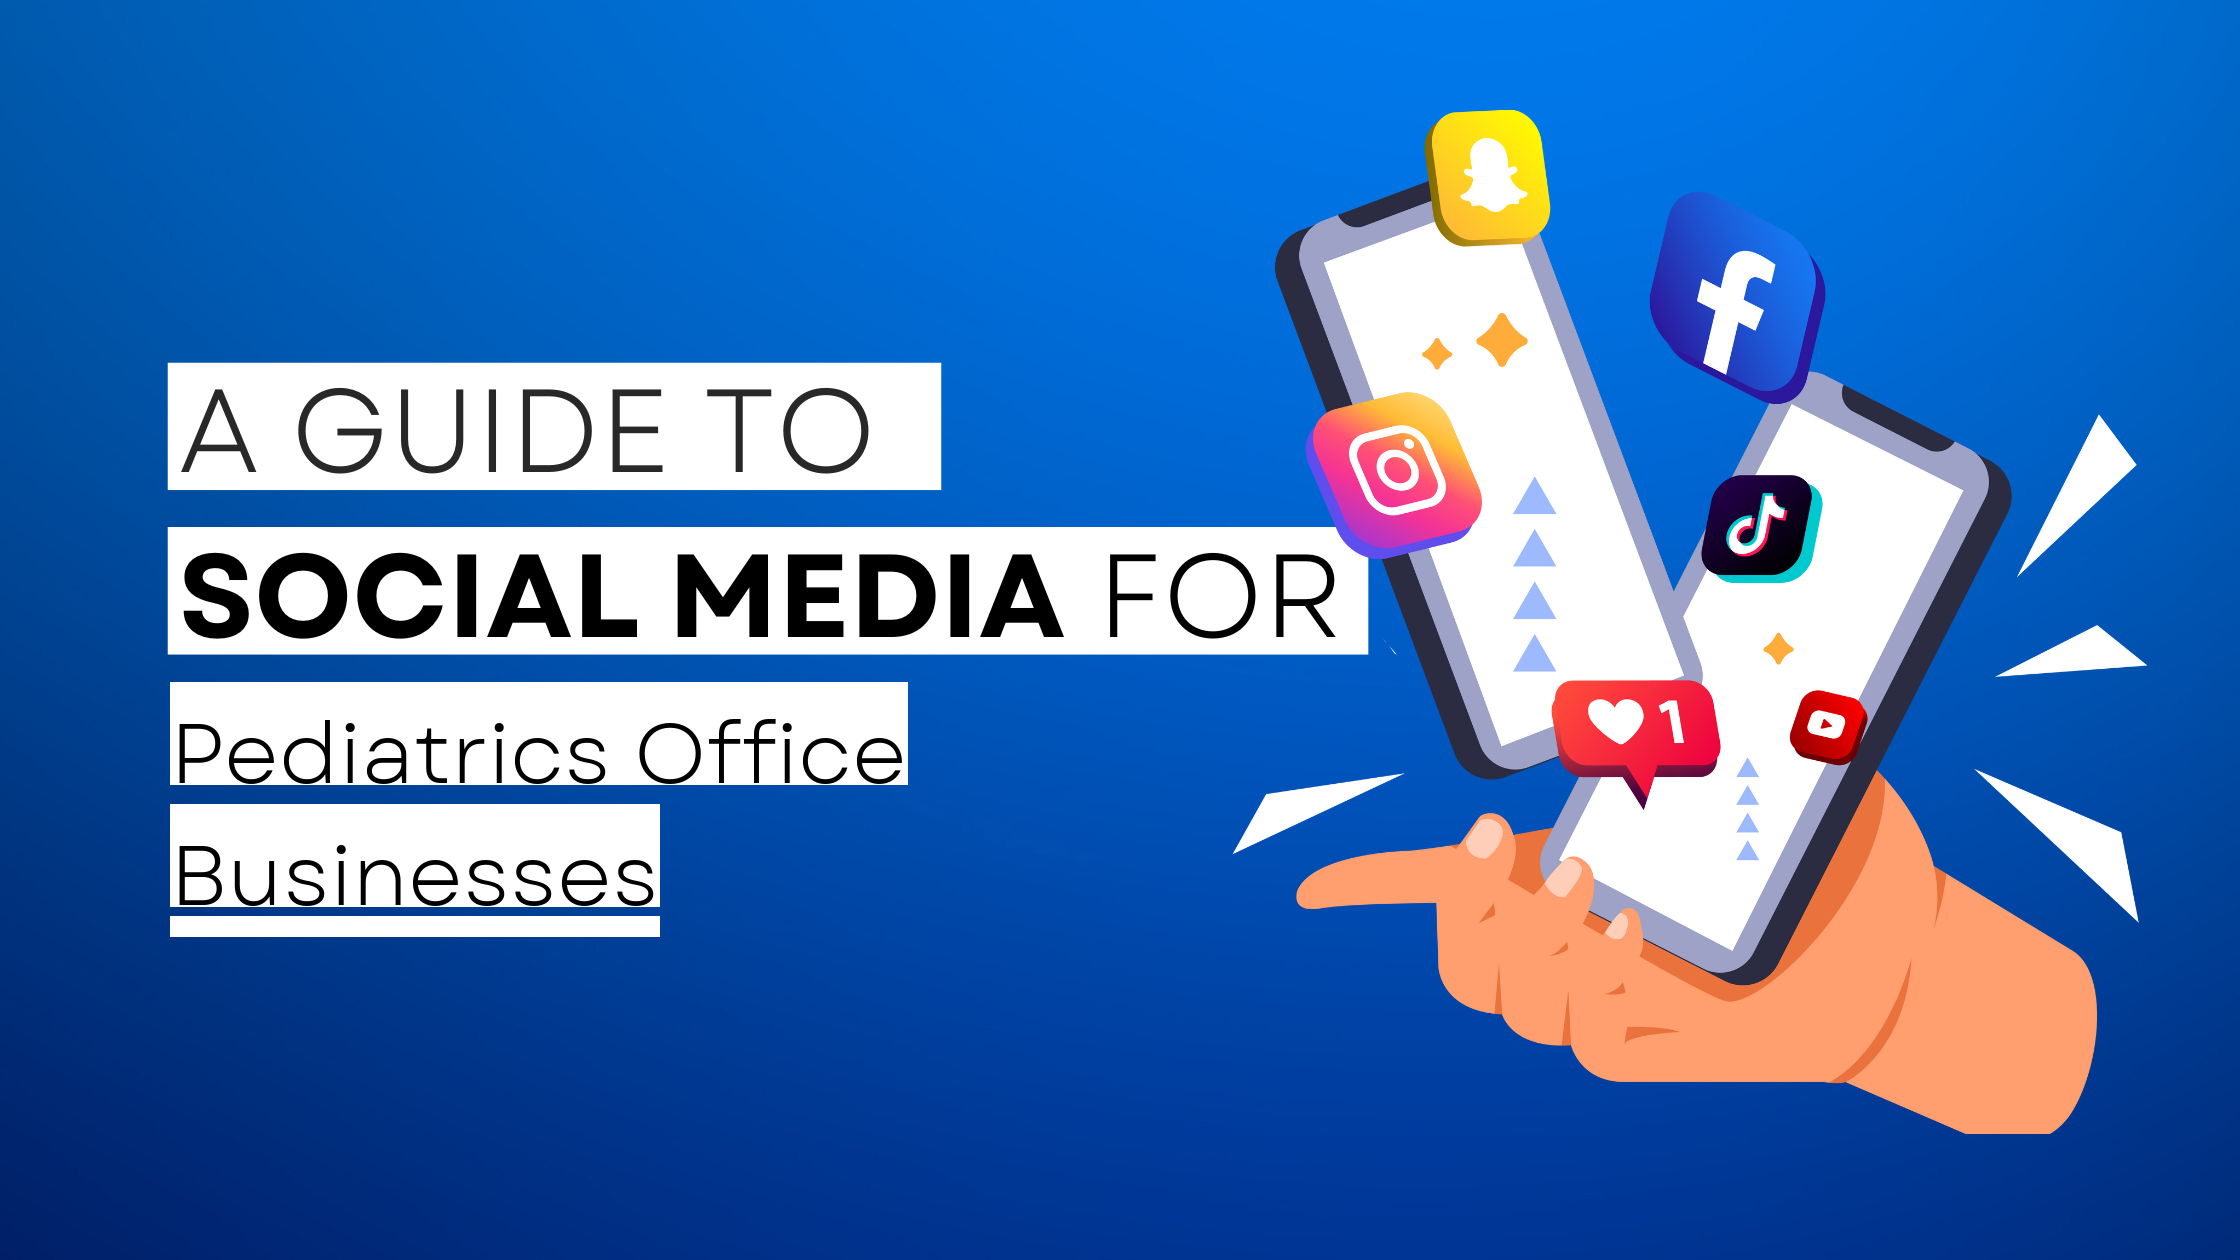 How to start Pediatrics Office on social media